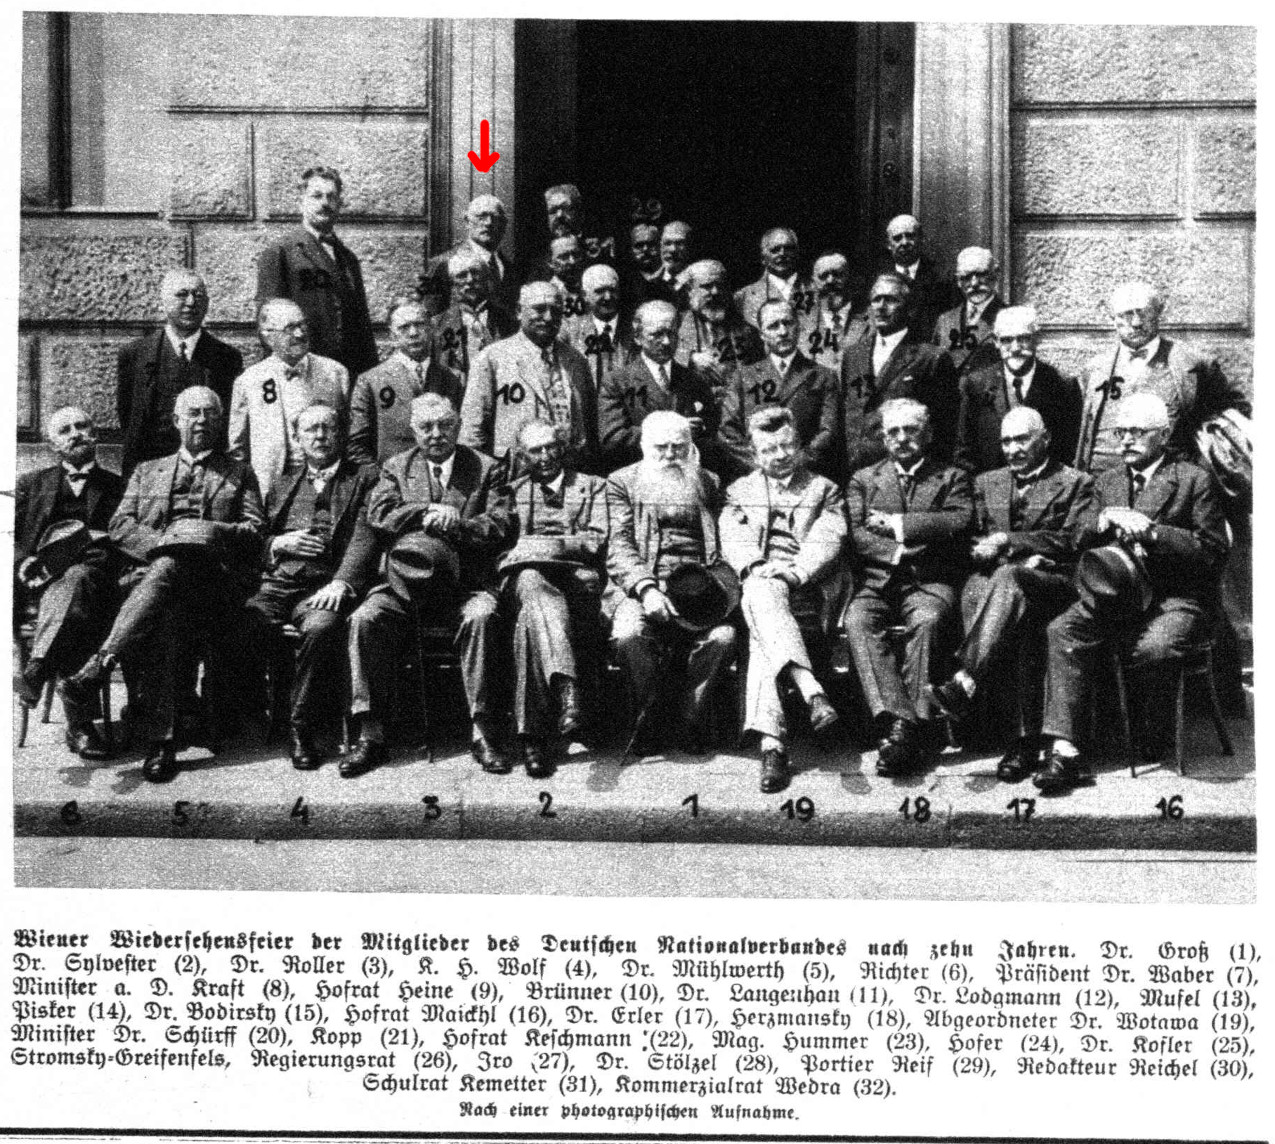 1928: Die letzte bekannte Aufnahme Wedras zeigt ihn im Kreise der noch lebenden Mitglieder des ehemaligen "Deutschen Nationalverbands" im Reichsrat - 10 Jahre nach der Republiksgründung